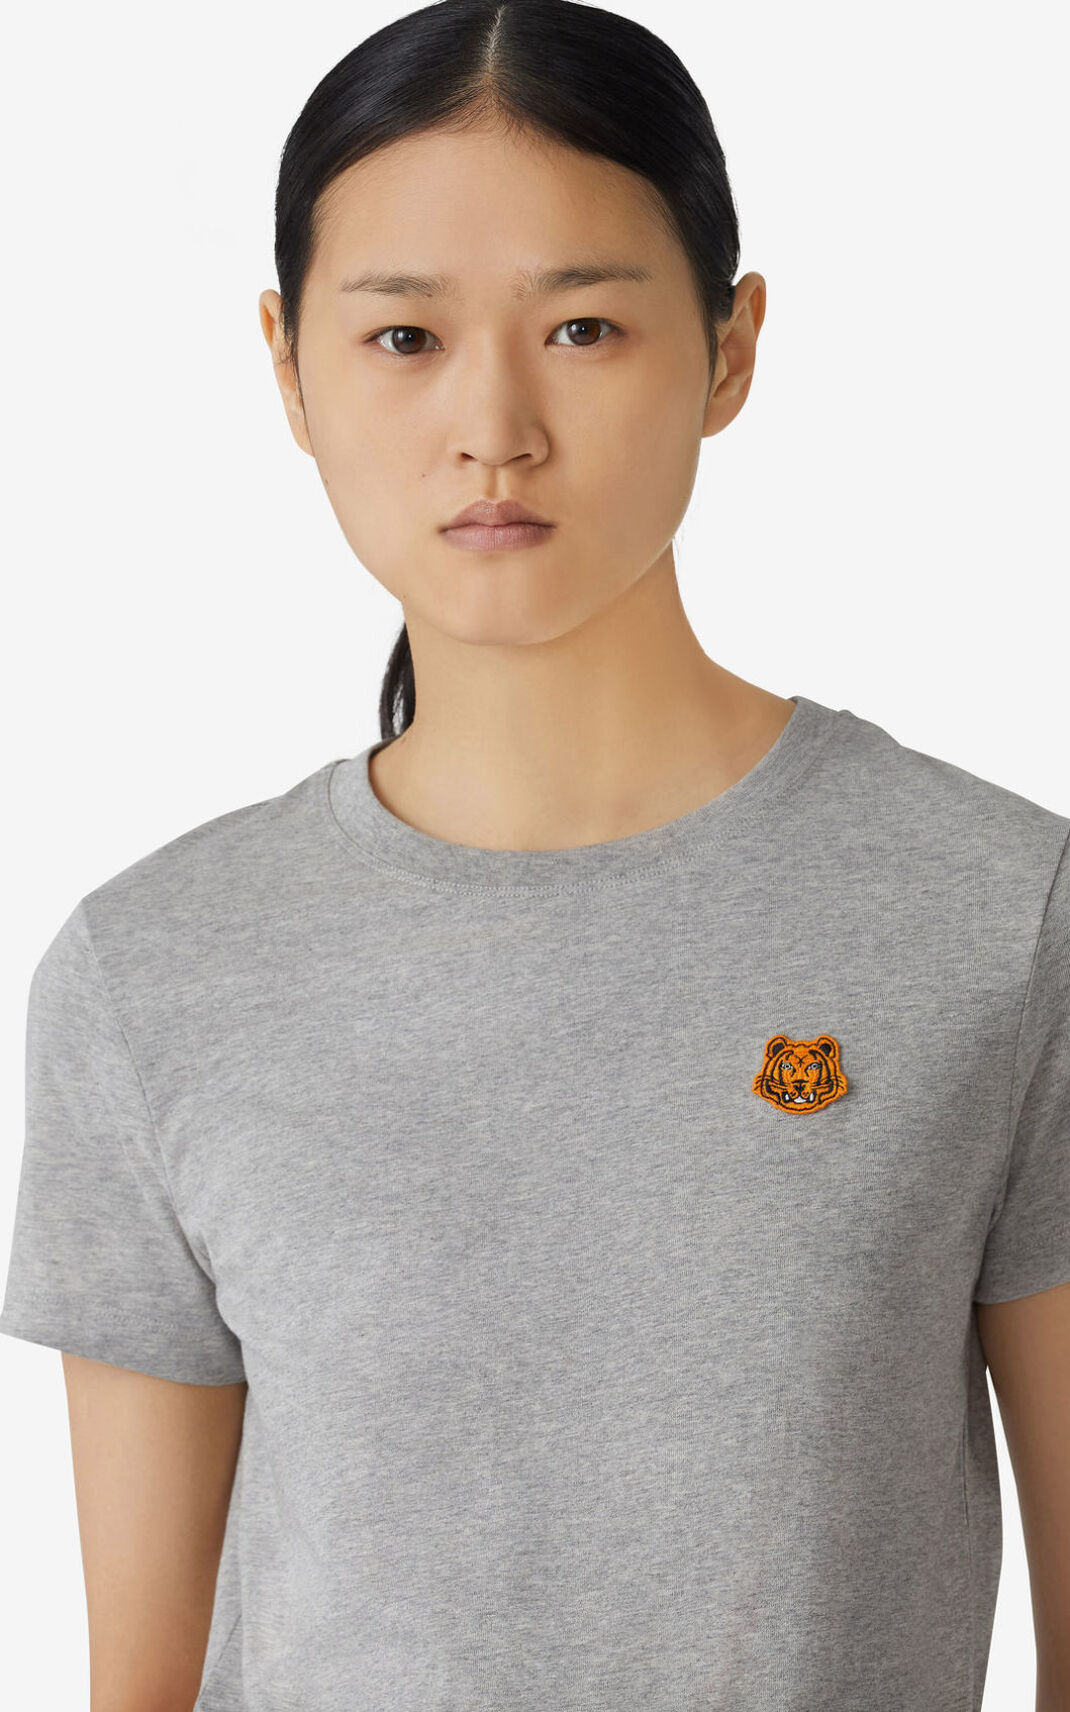 Kenzo 虎 Crest Tシャツ レディース グレー - PQCAYM837